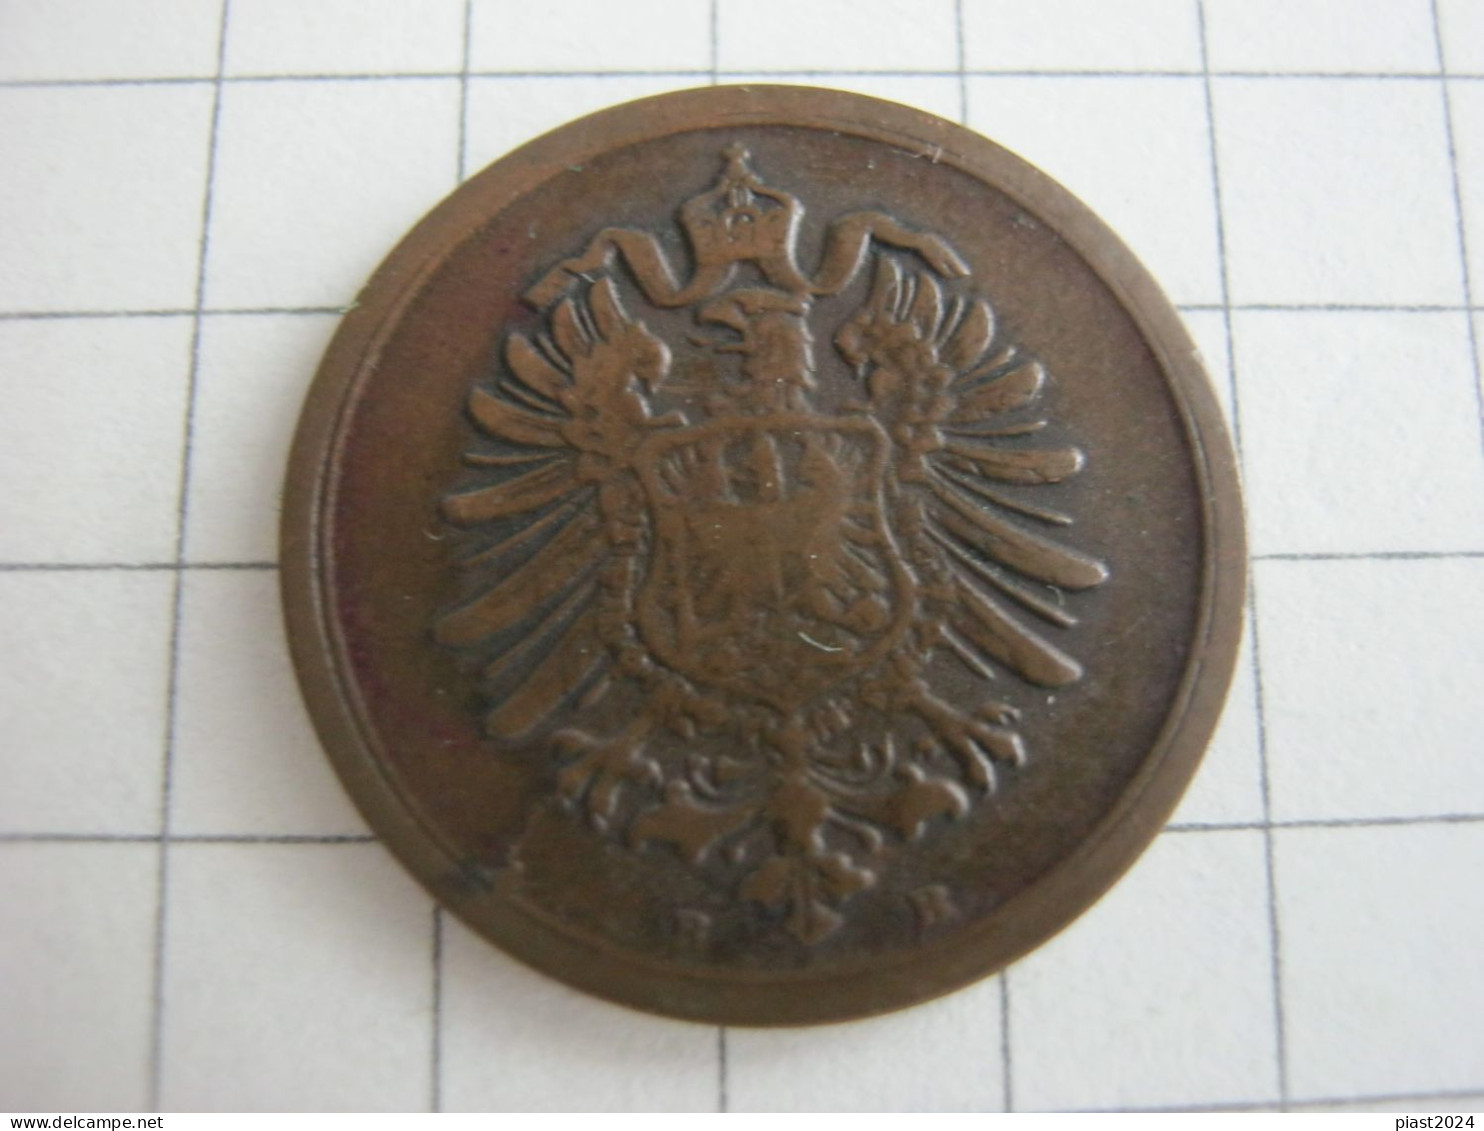 Germany 1 Pfennig 1874 B - 1 Pfennig